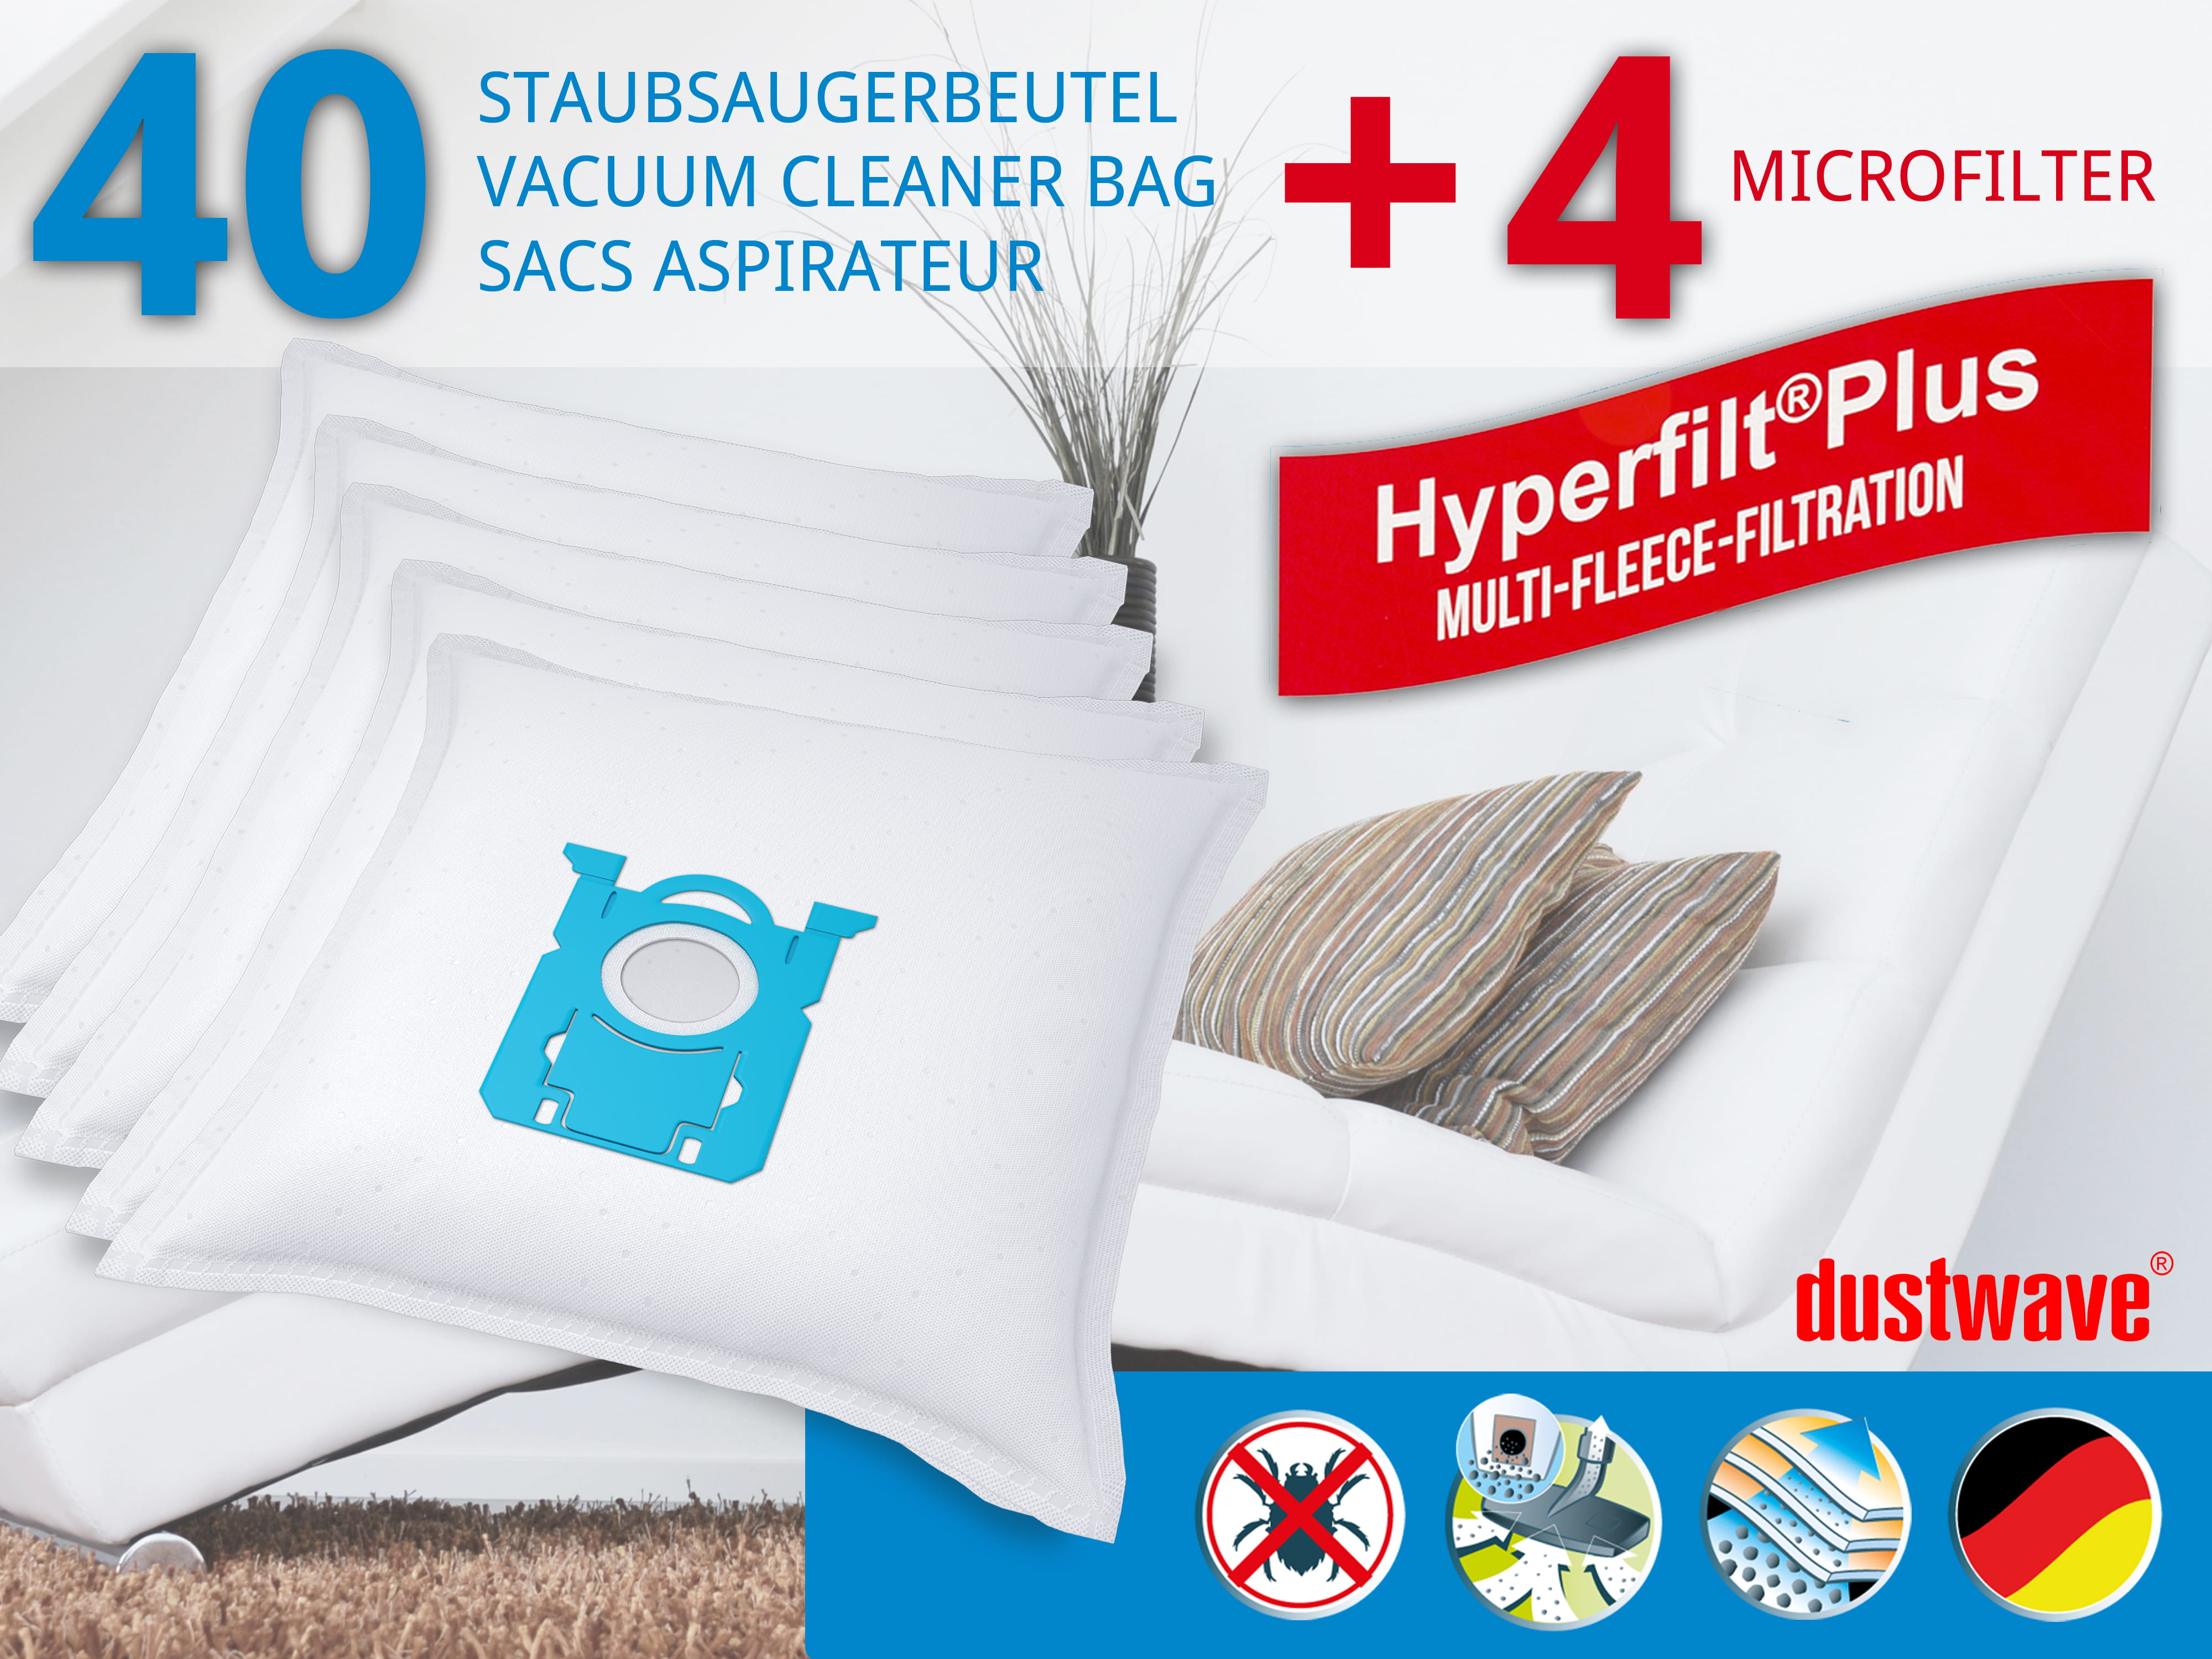 Dustwave® 40 Staubsaugerbeutel für AEG GR212 / Größe 212 - hocheffizient, mehrlagiges Mikrovlies mit Hygieneverschluss - Made in Germany